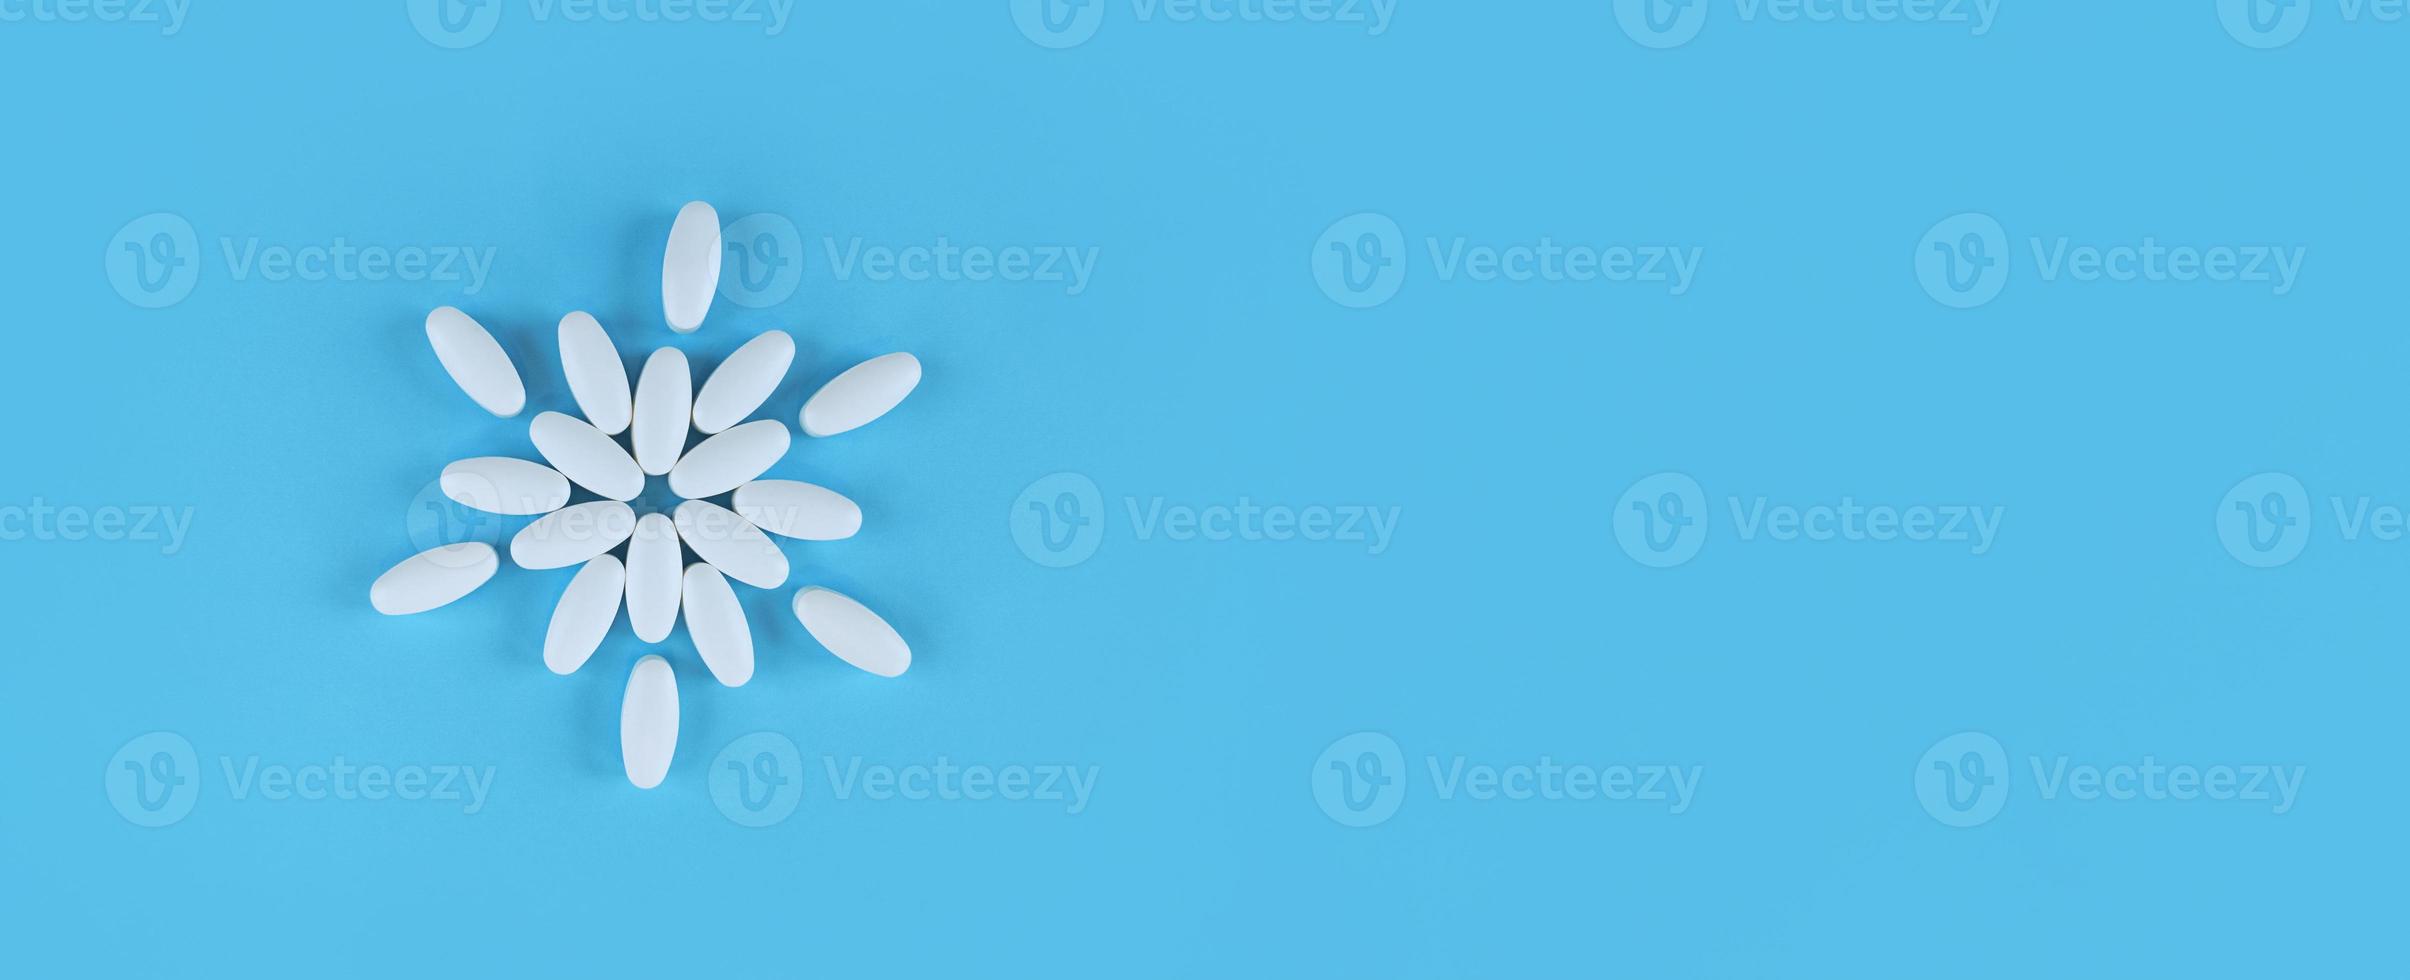 blomma form gjord av vita tabletter på blå bakgrund med kopia utrymme foto